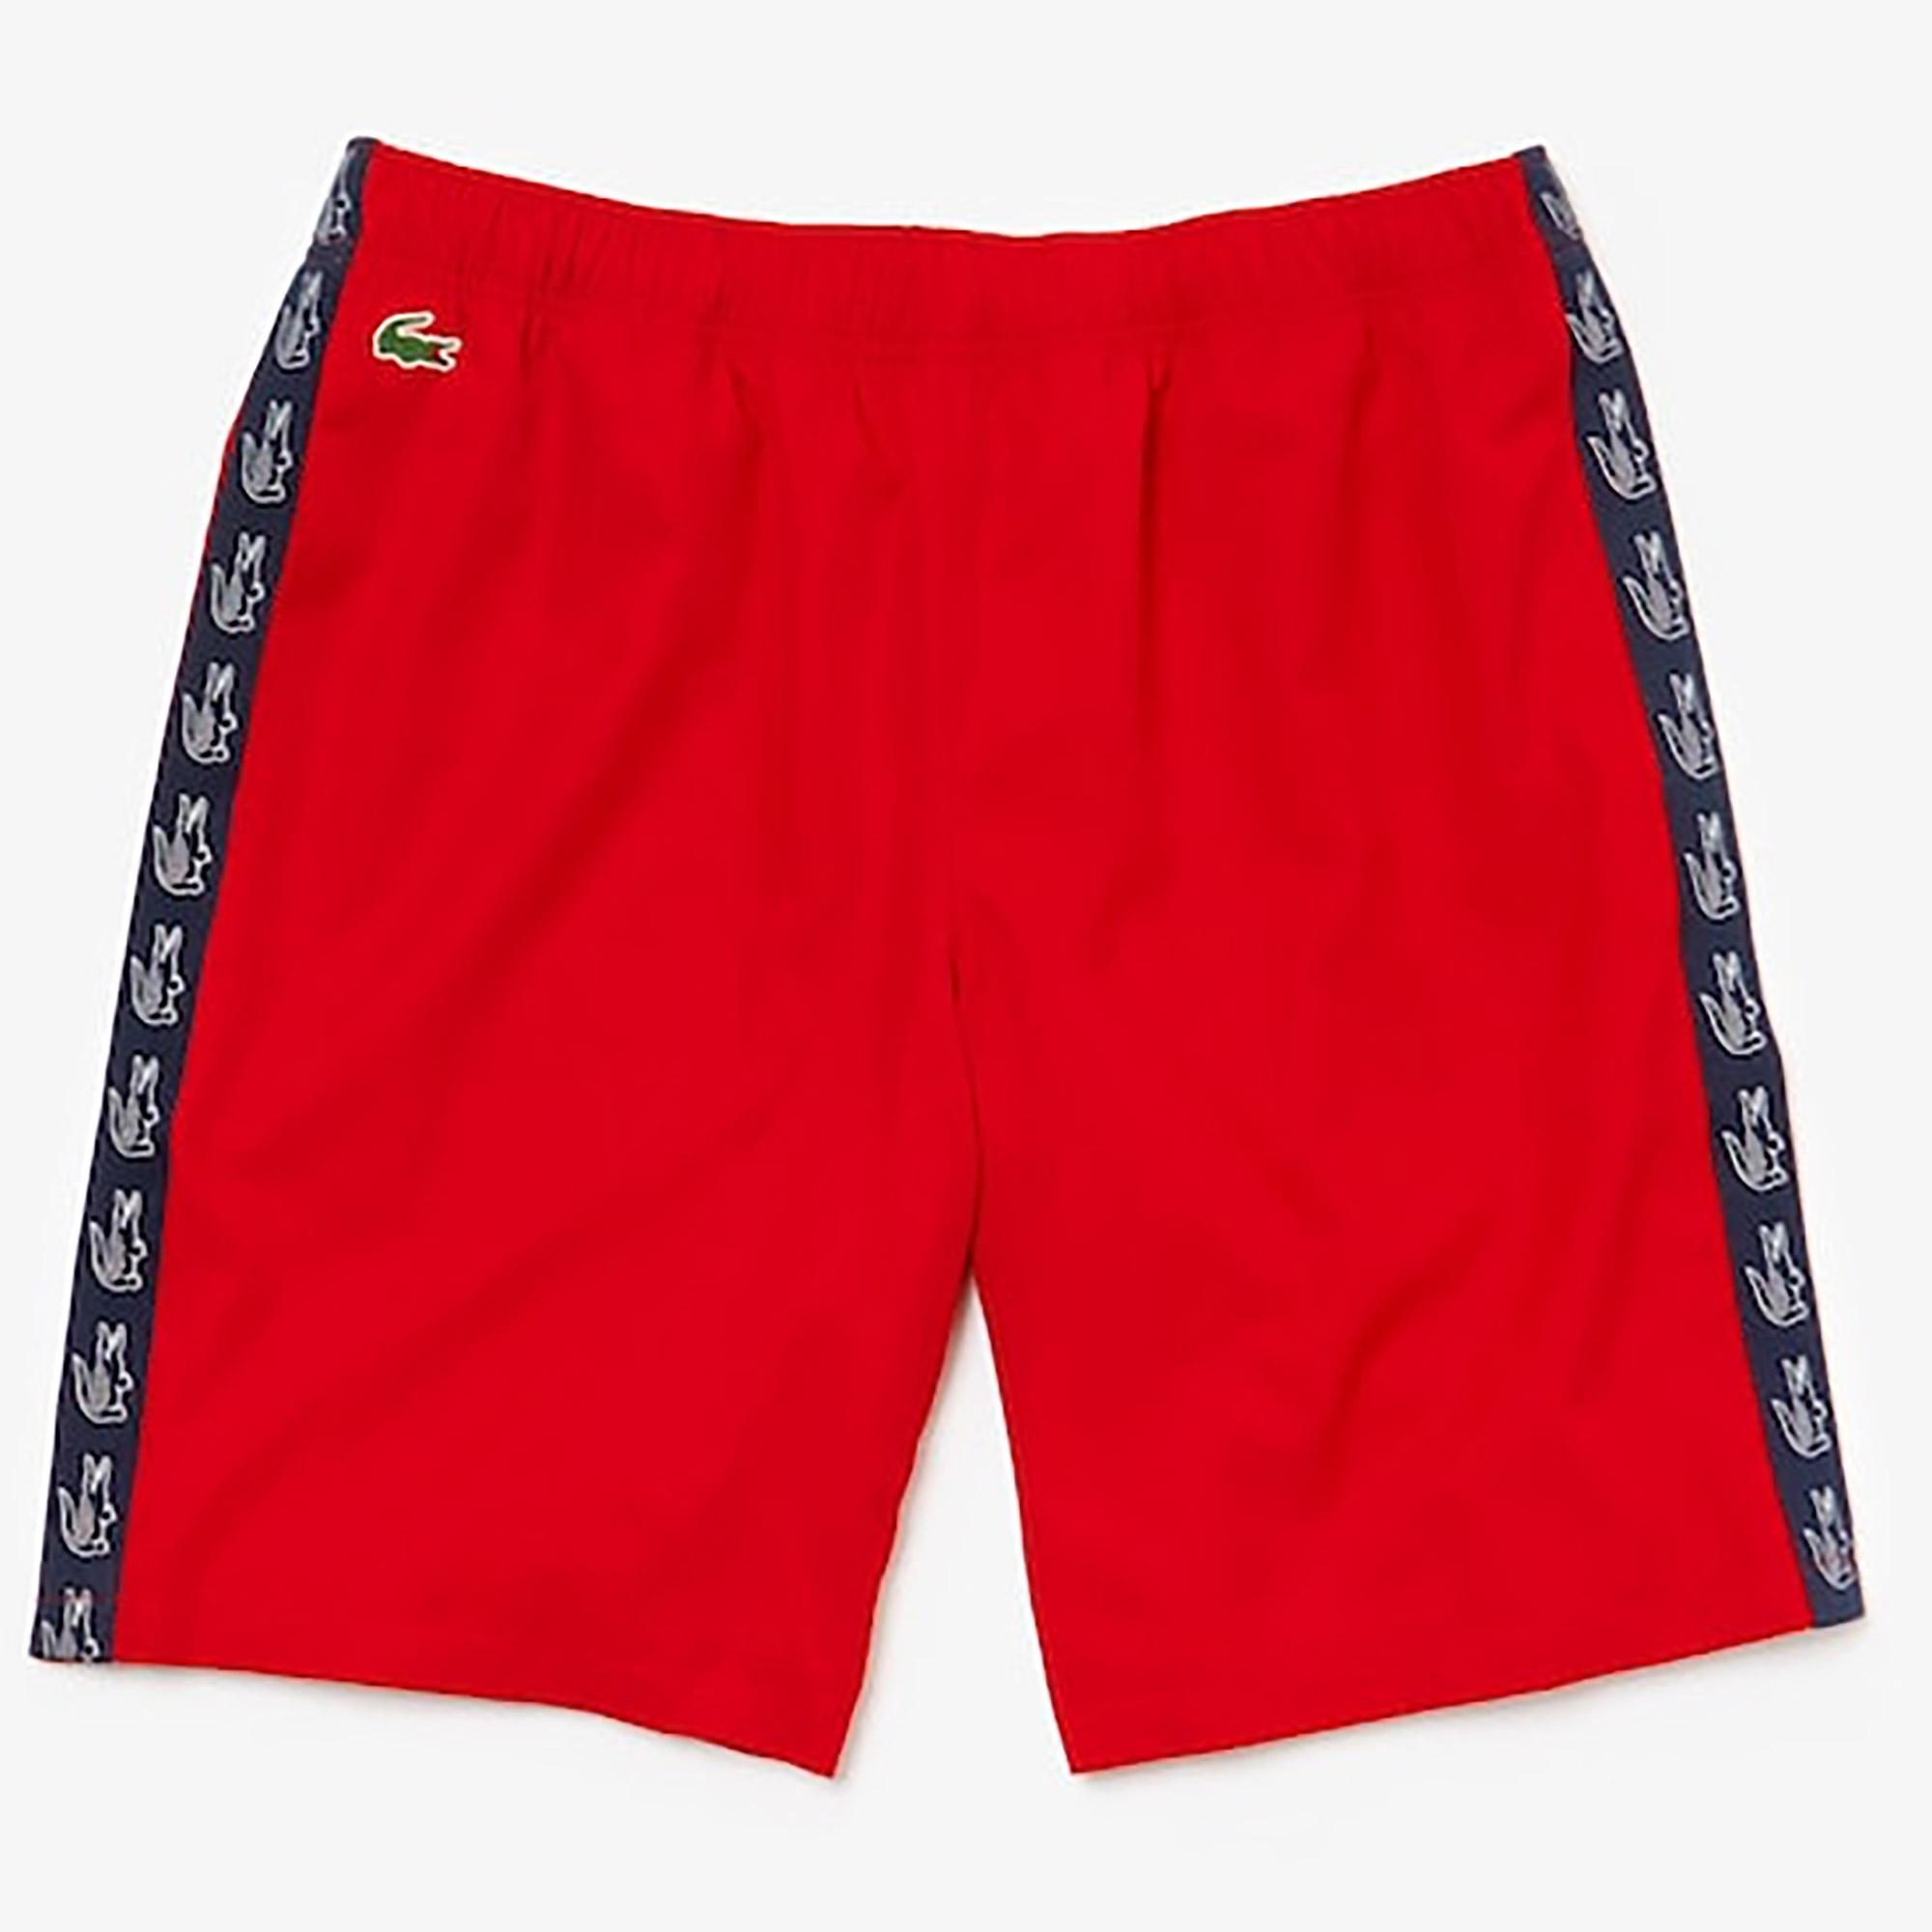 Lacoste Mens Shorts - Red/Navy Blue - Tennisnuts.com